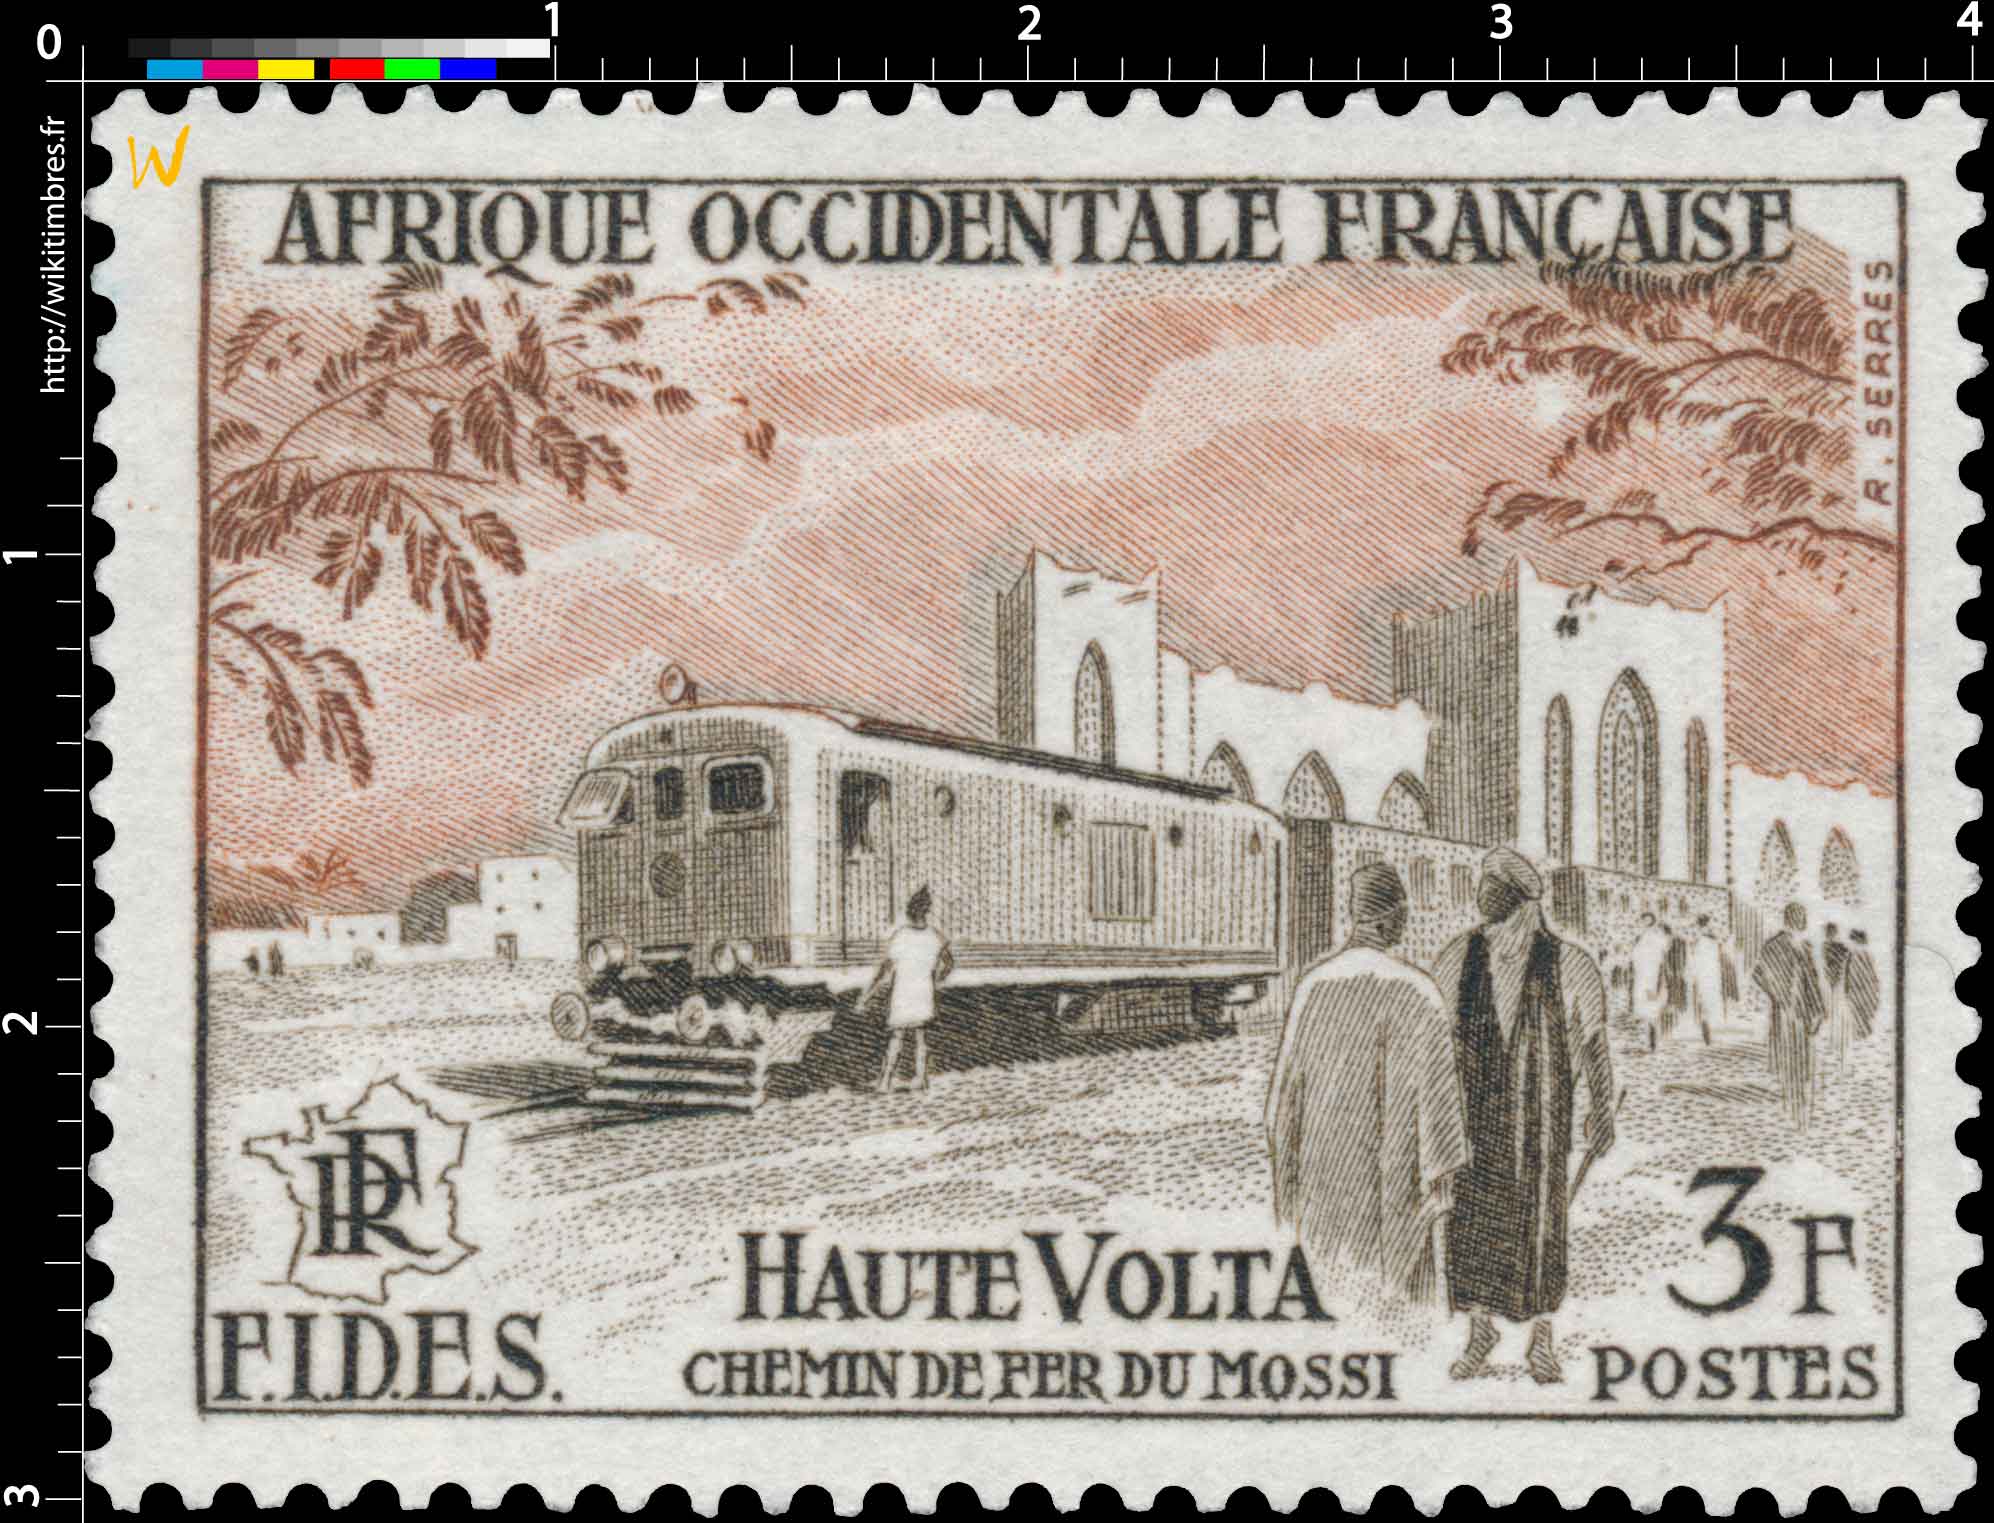 Afrique Occidentale Française - F.I.D.E.S.  Chemins de fer du Mossi  Haute-Volta 